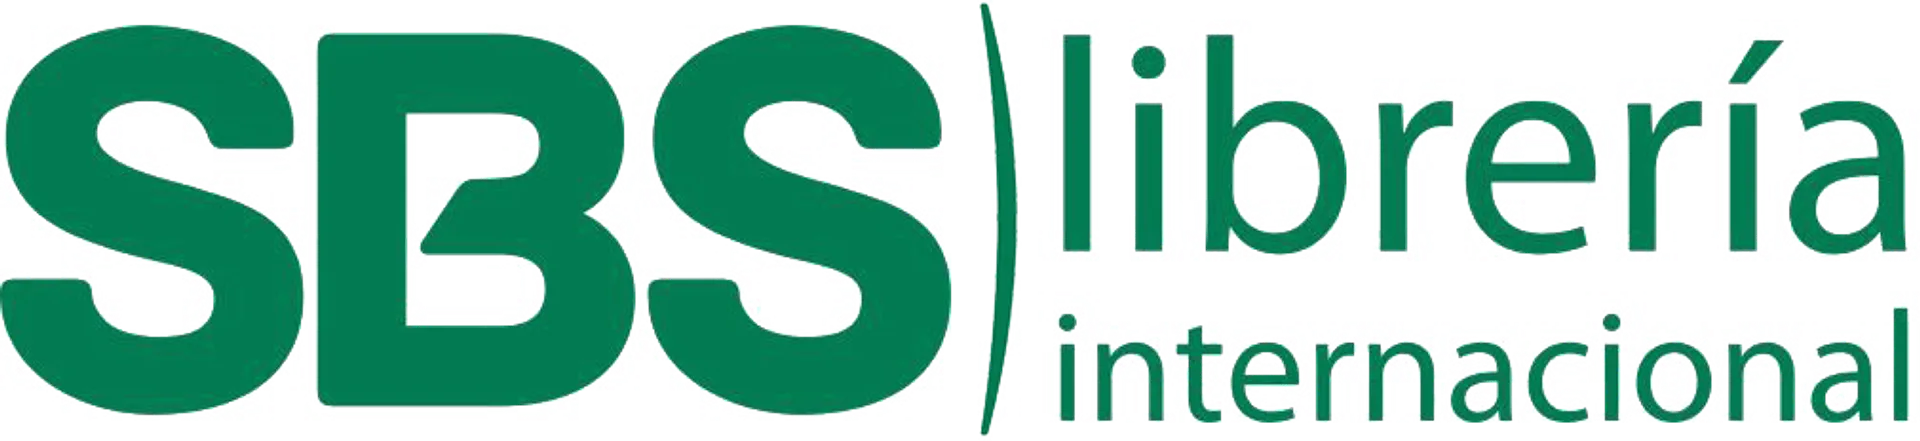 SBS LIBRERÍA logo de catálogo